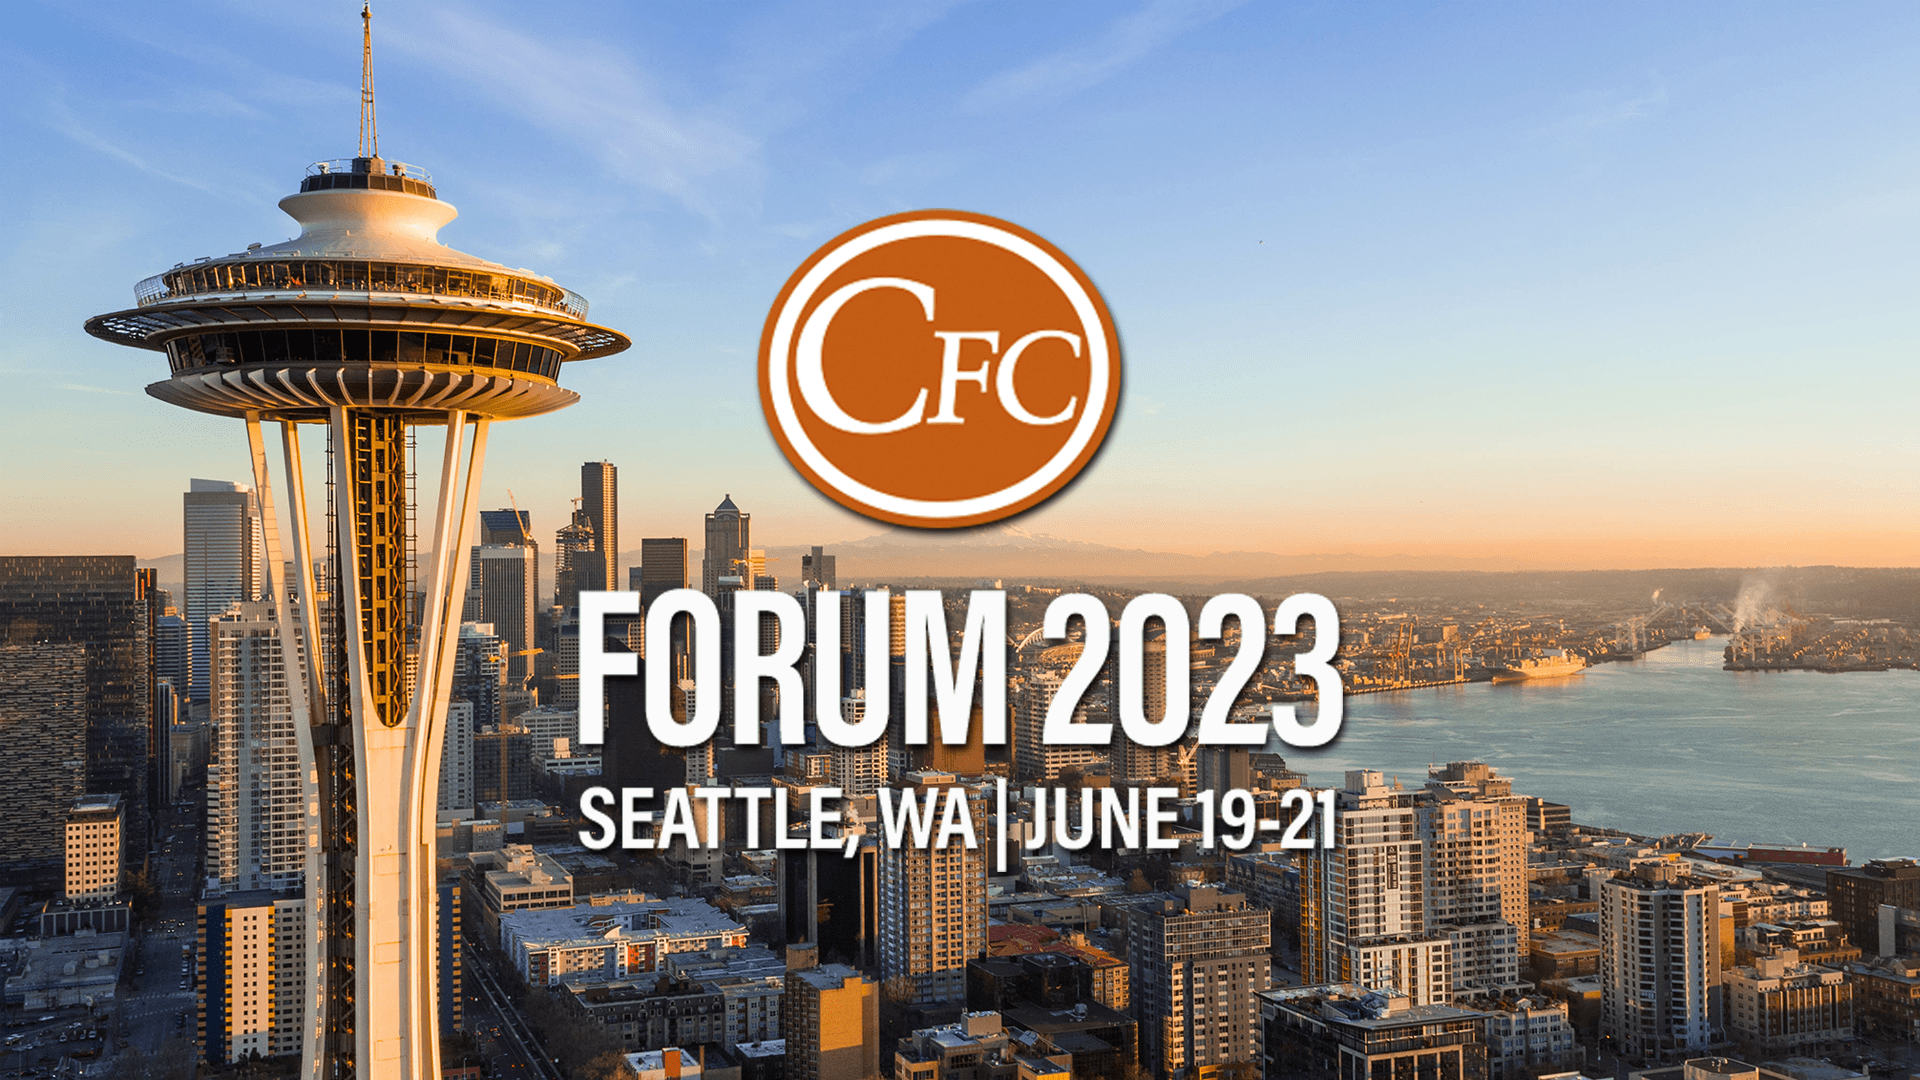 CFC Forum 2023